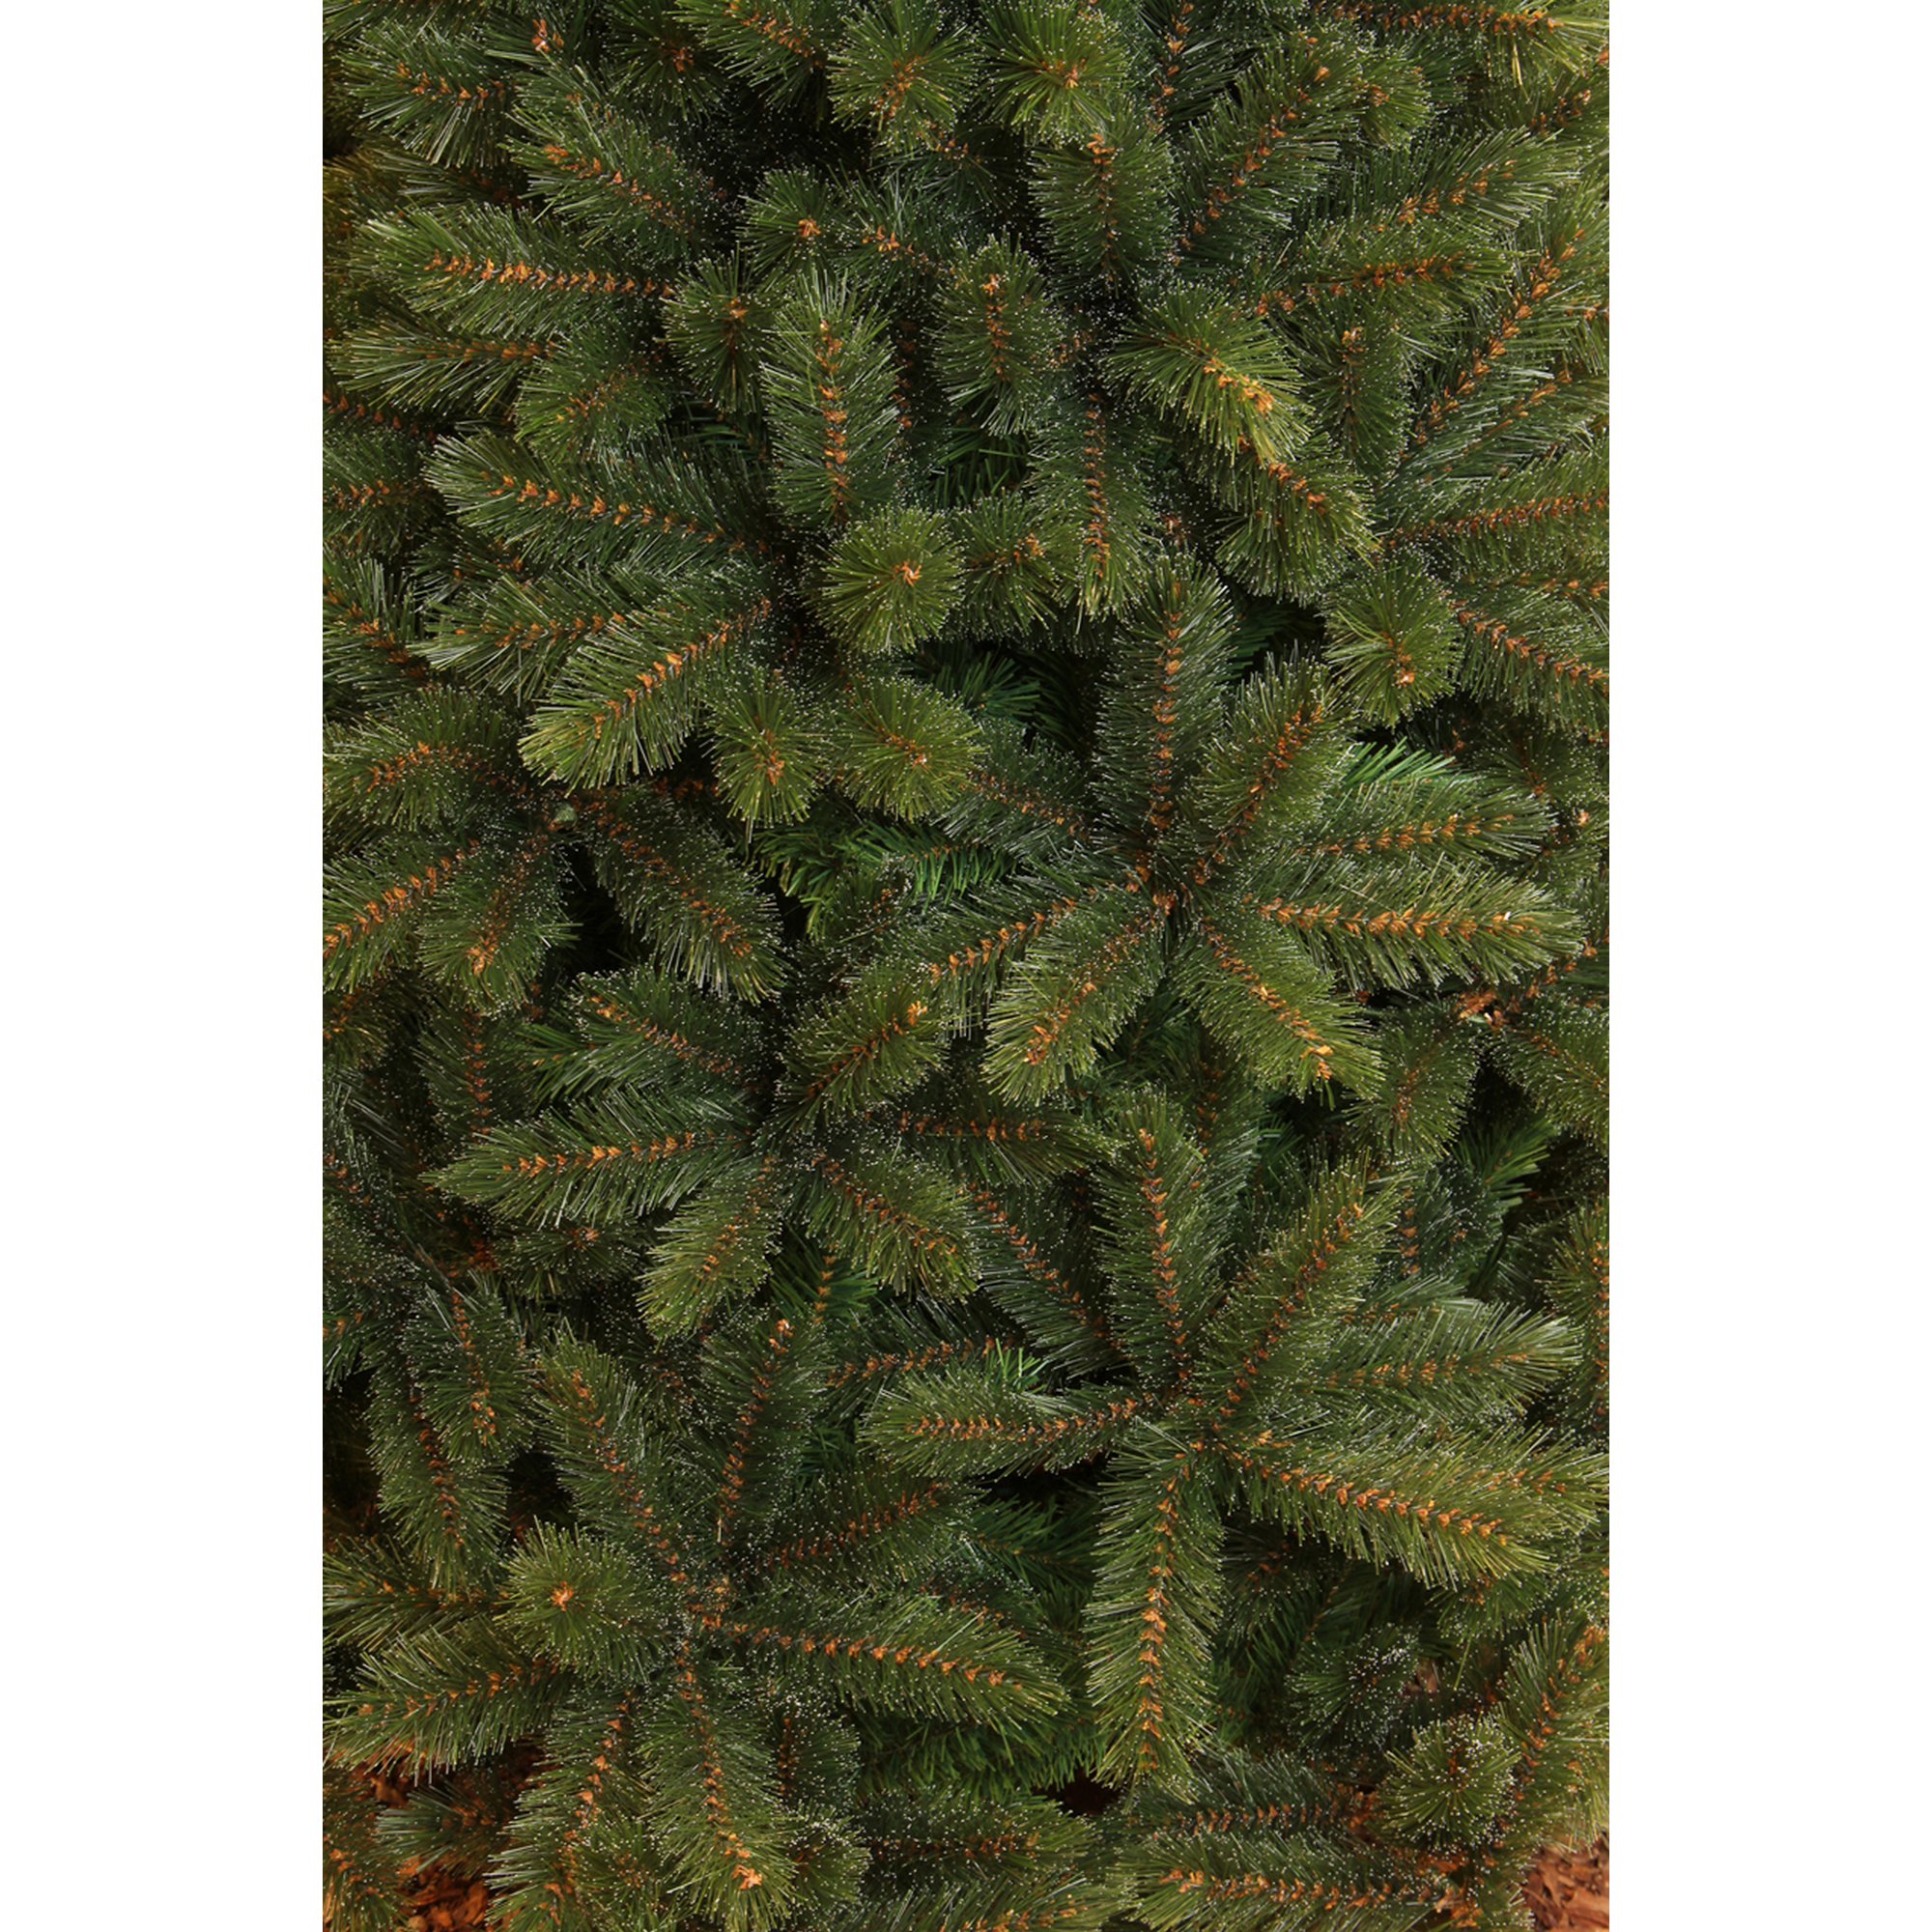 Künstlicher Weihnachtsbaum 'Forest Frosted' grün 120 cm + product picture